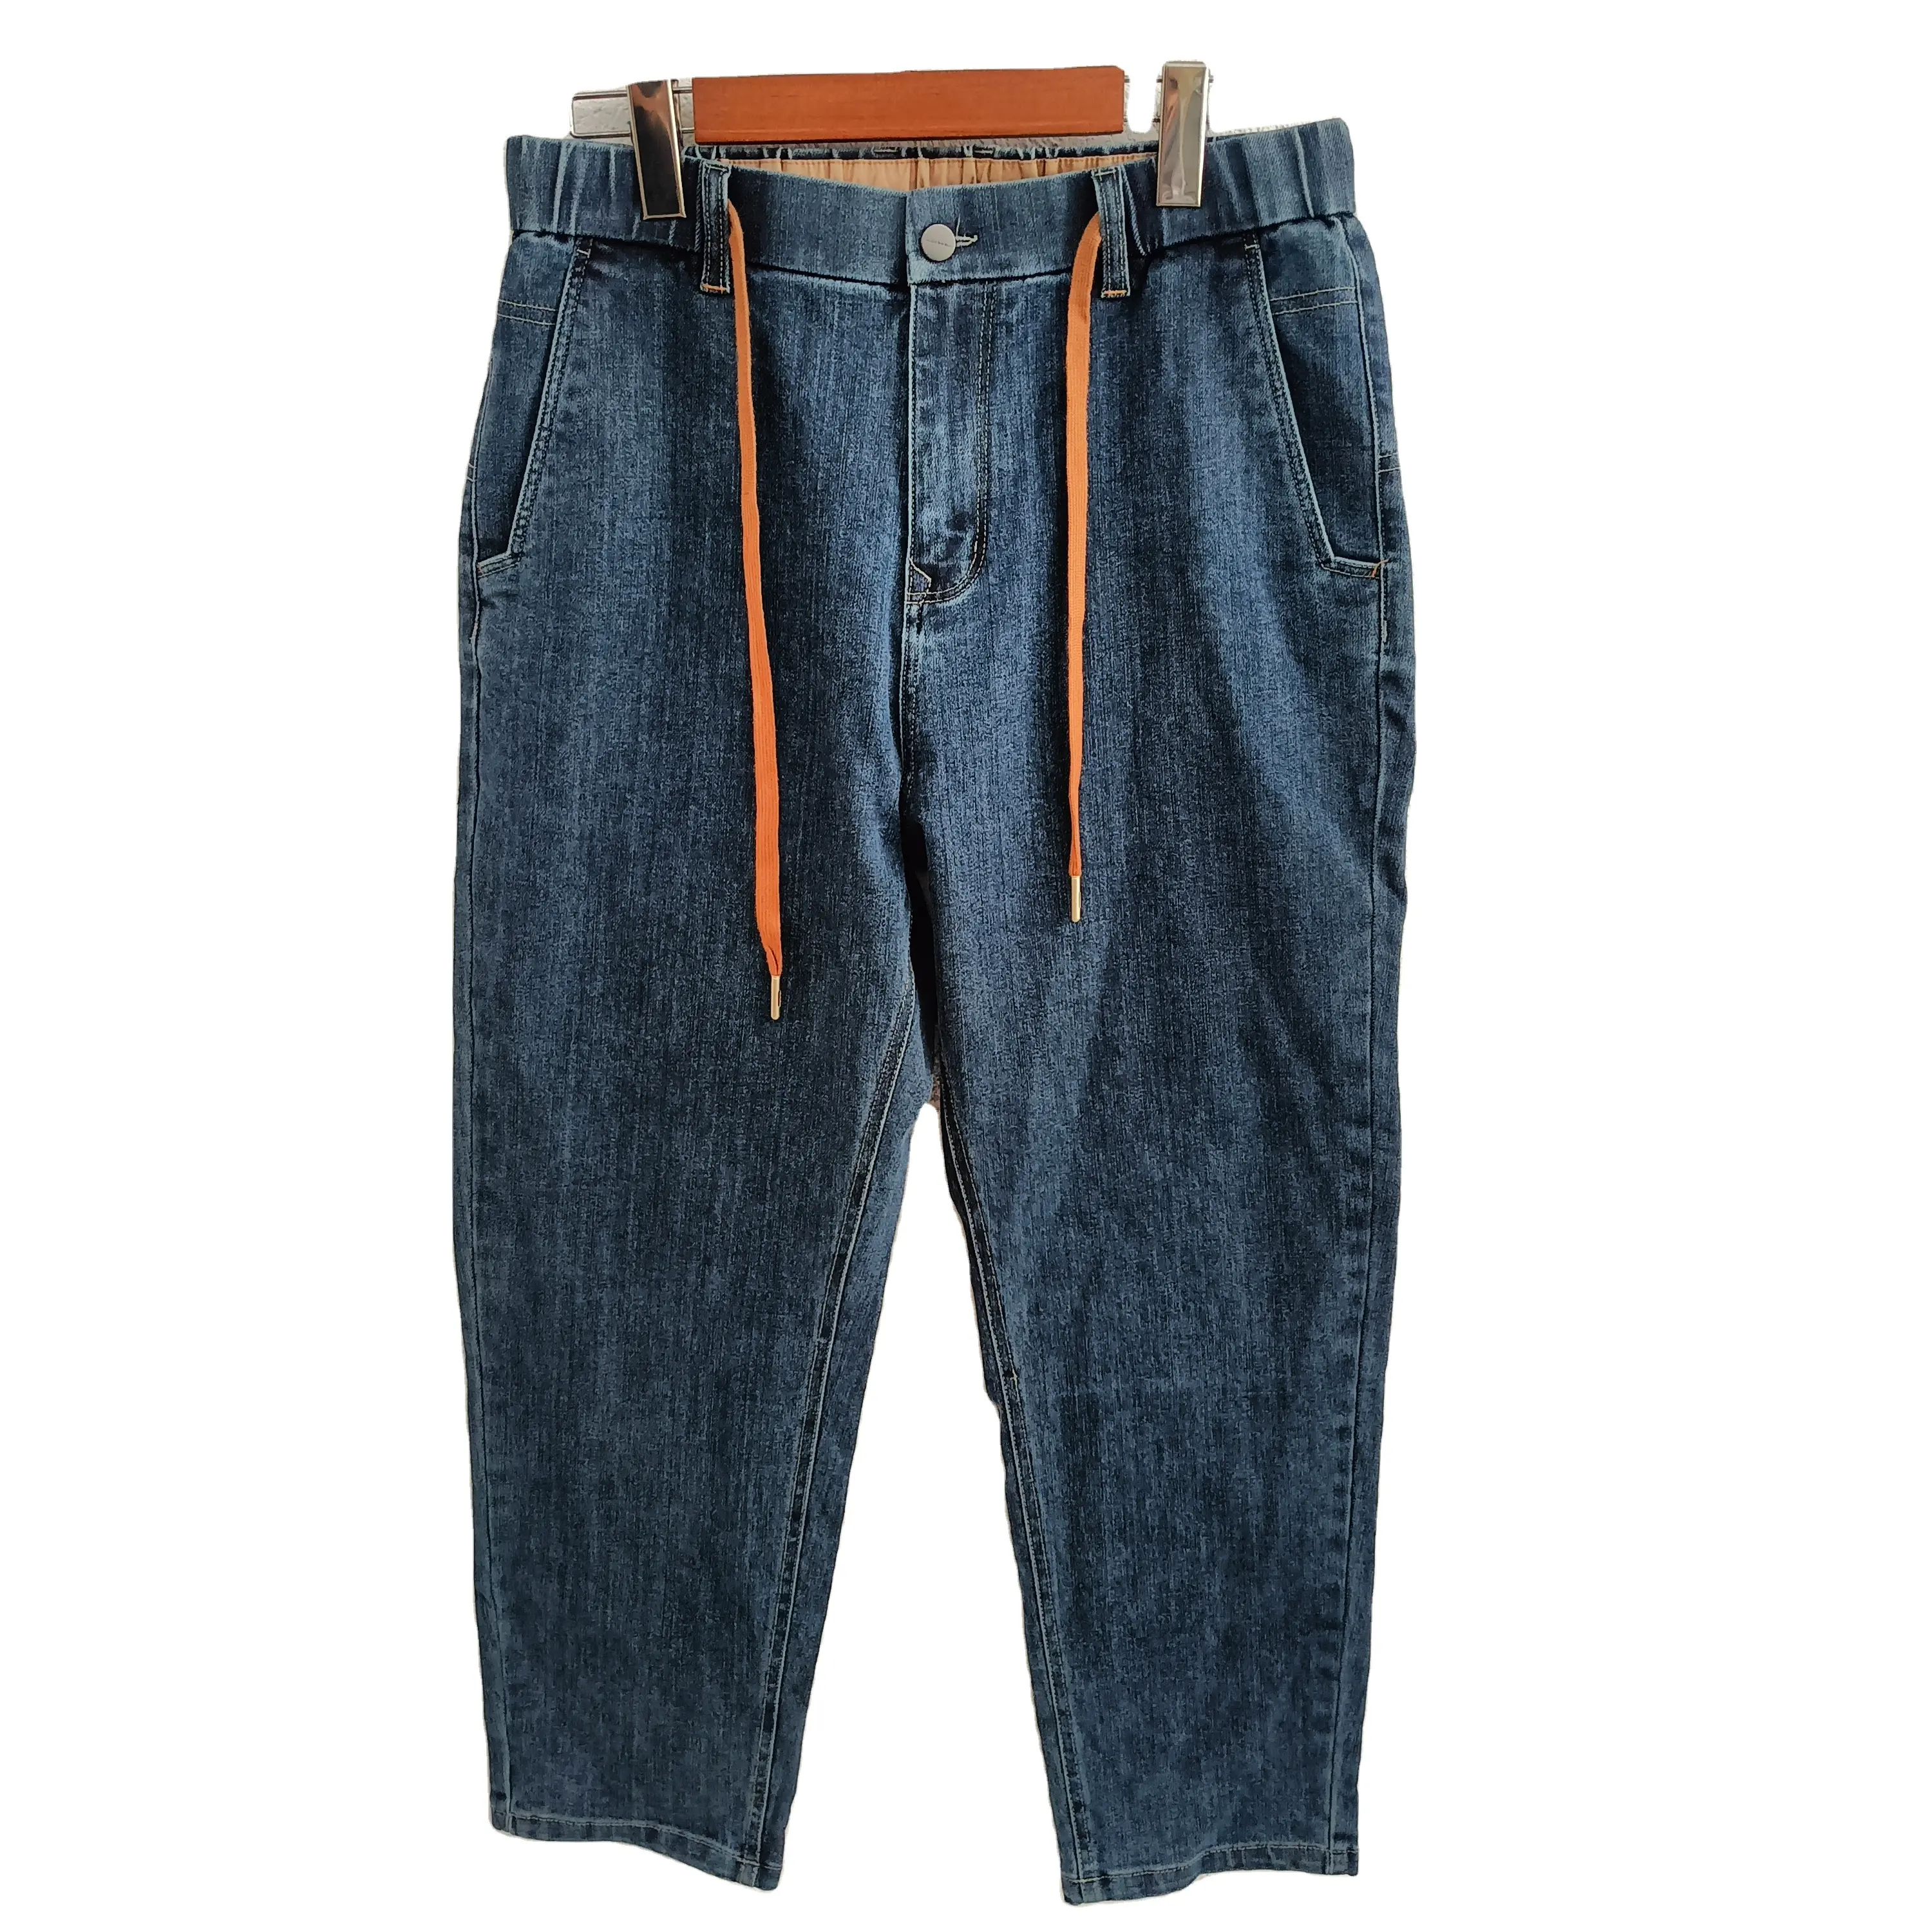 גדול כמות רכישה זול סיטונאי ג 'ינס סיטונאי גברים צבעים גברים ג' ינס